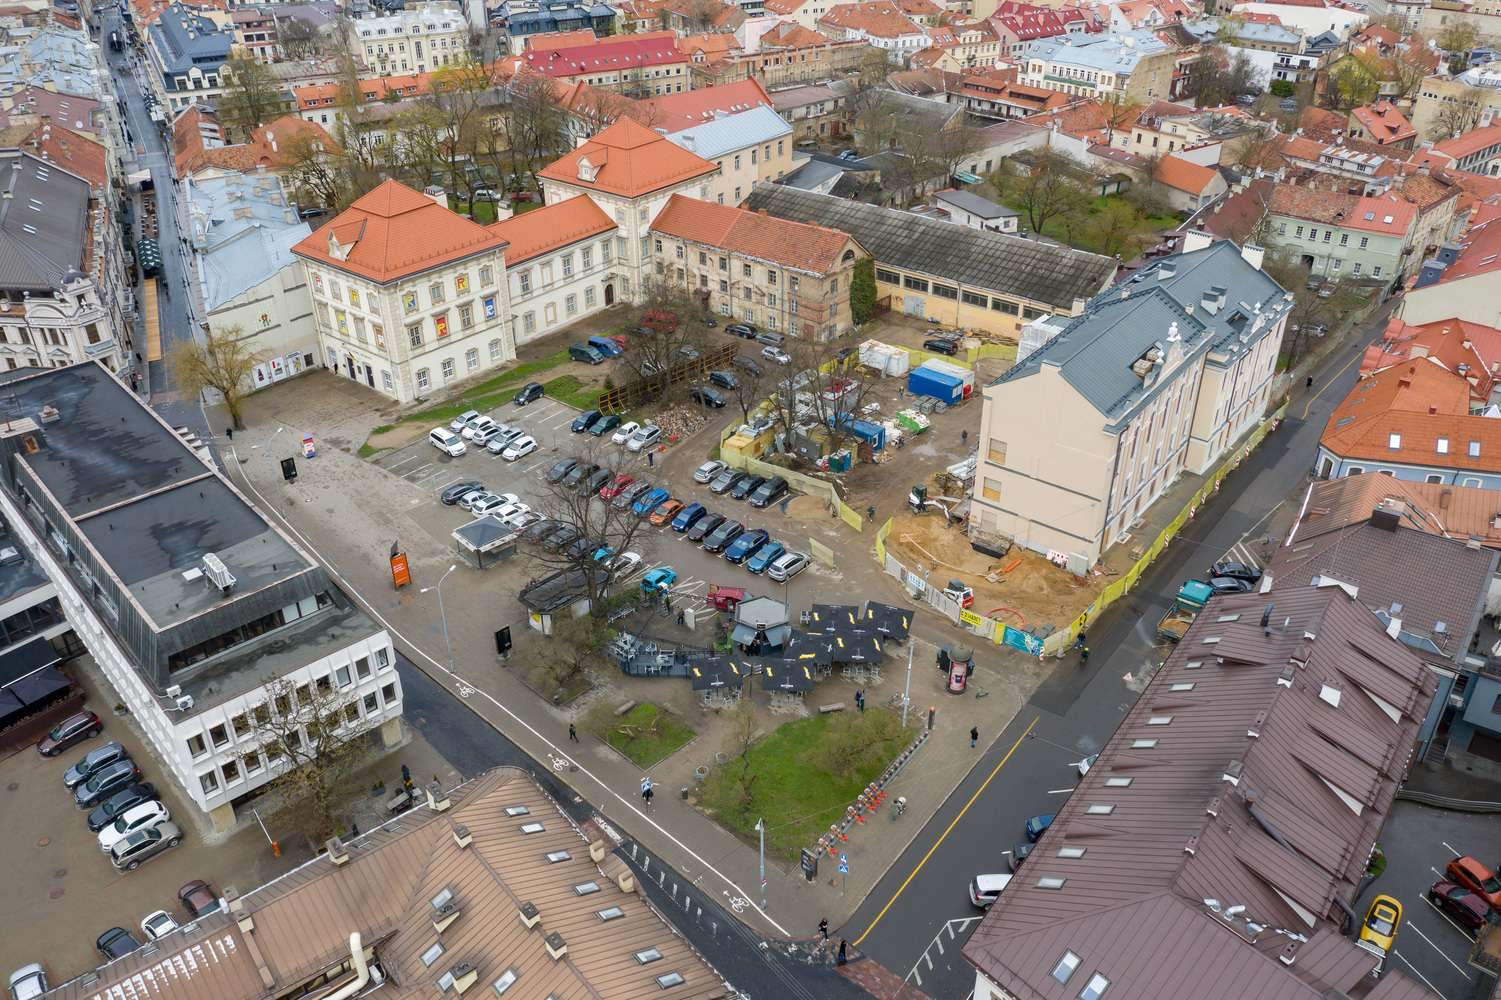 دعوة مفتوحة: مسابقة معمارية دولية لإعادة بناء مجمع مباني قصر جونوشاس رادفيلا في متحف للفنون في فيلنيوس ، ليتوانيا